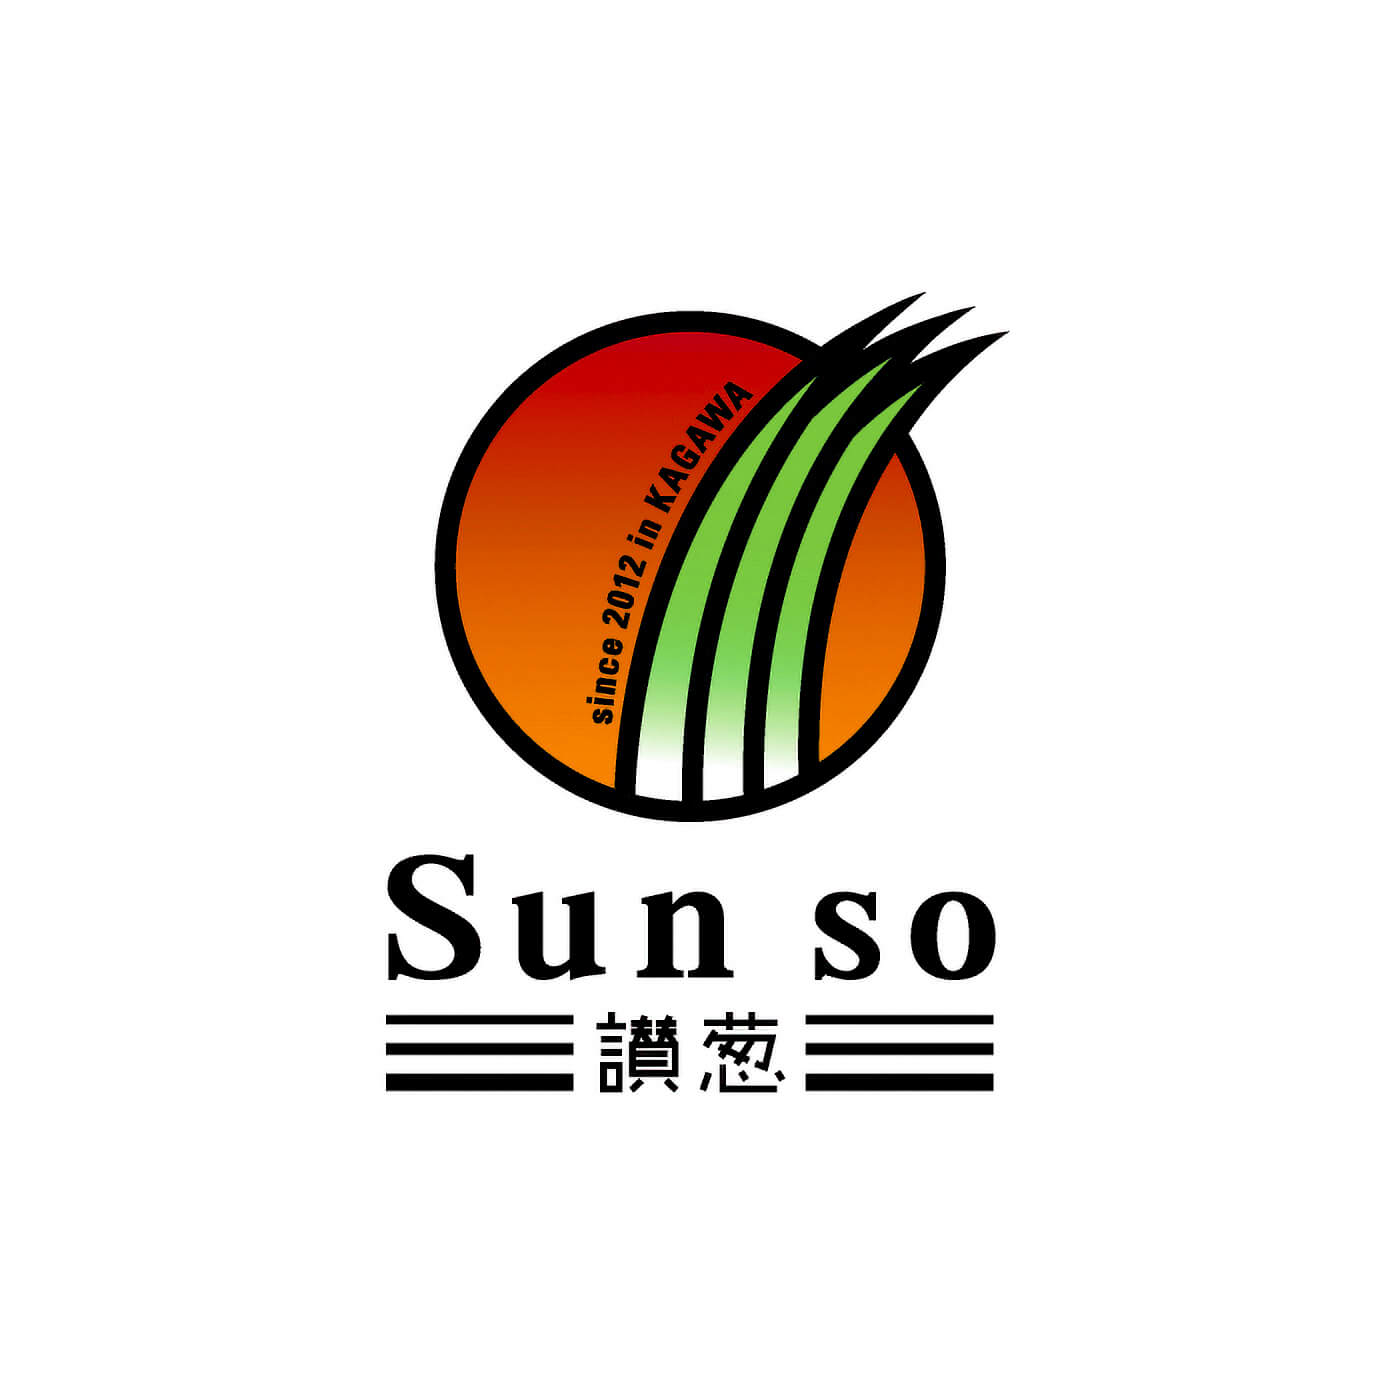 Sun so ロゴ